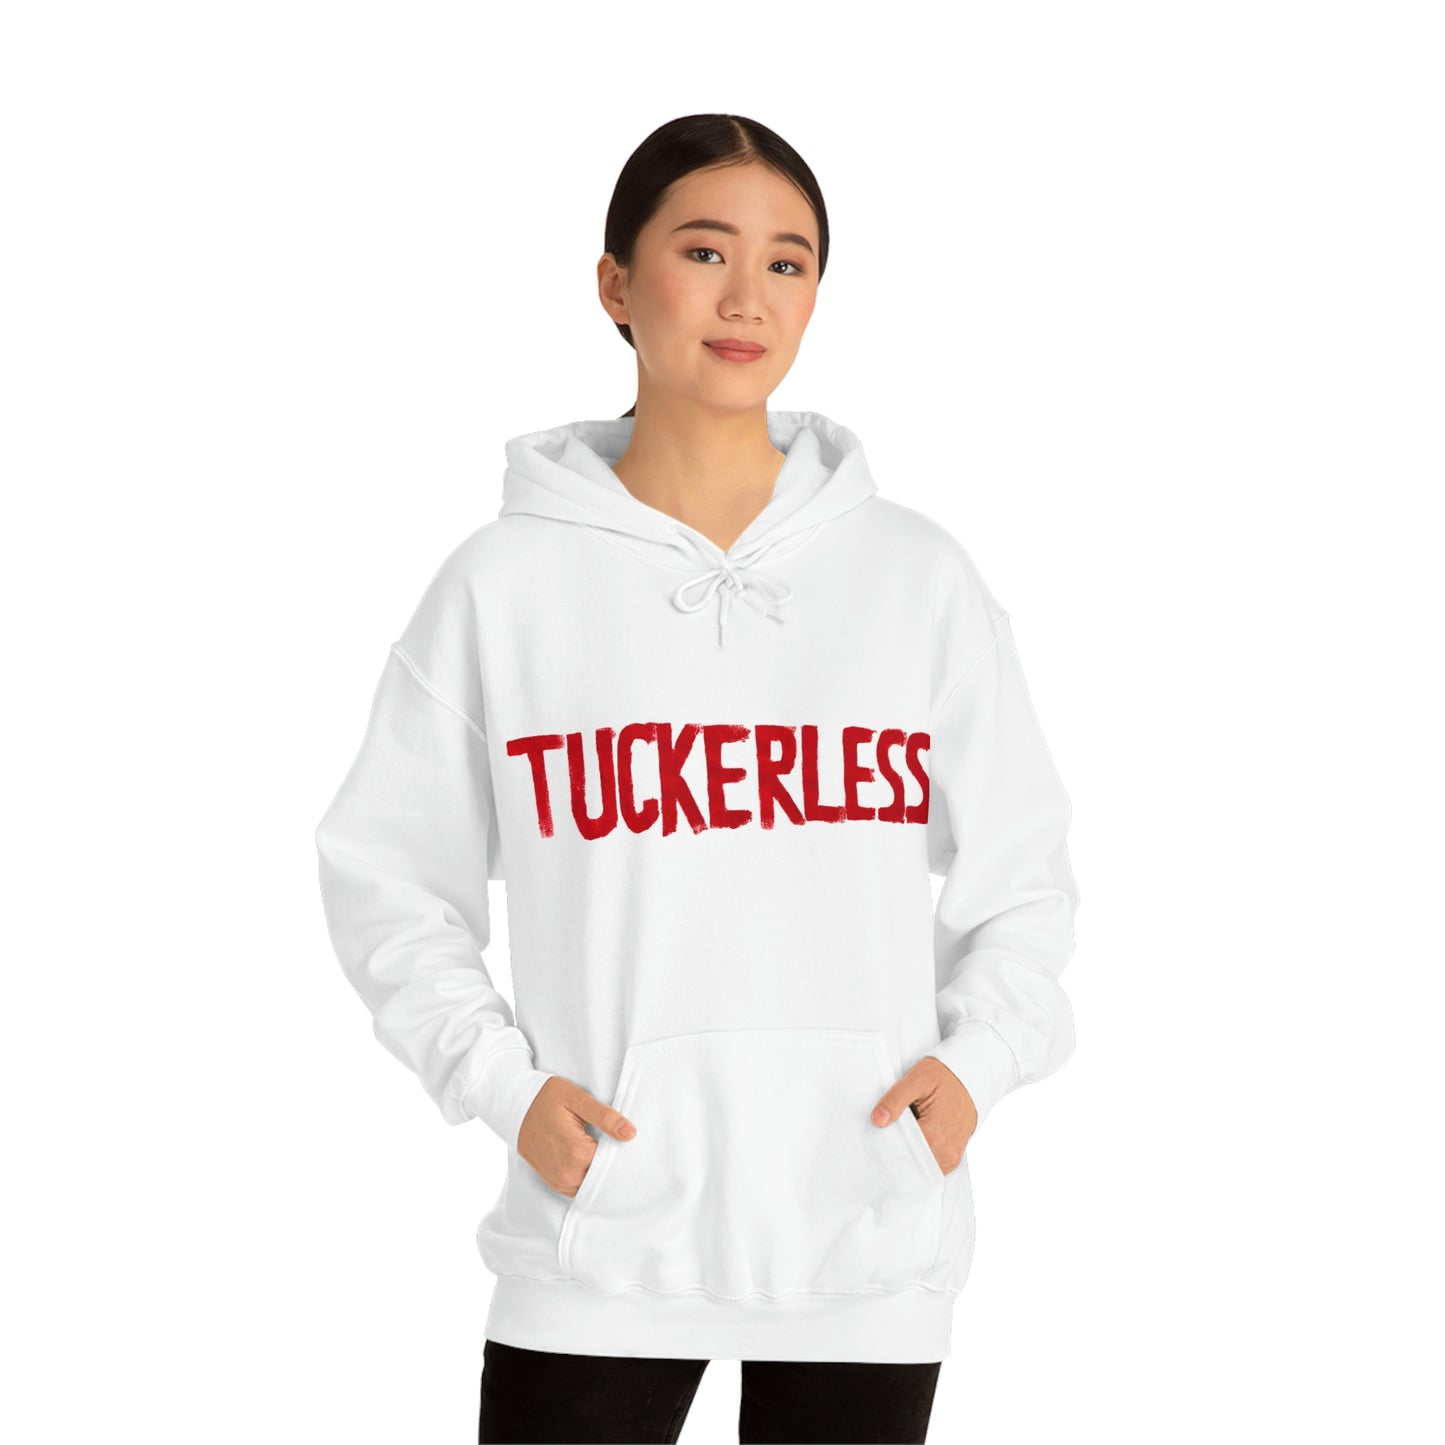 Unisex "Tuckerless" Hooded Sweatshirt